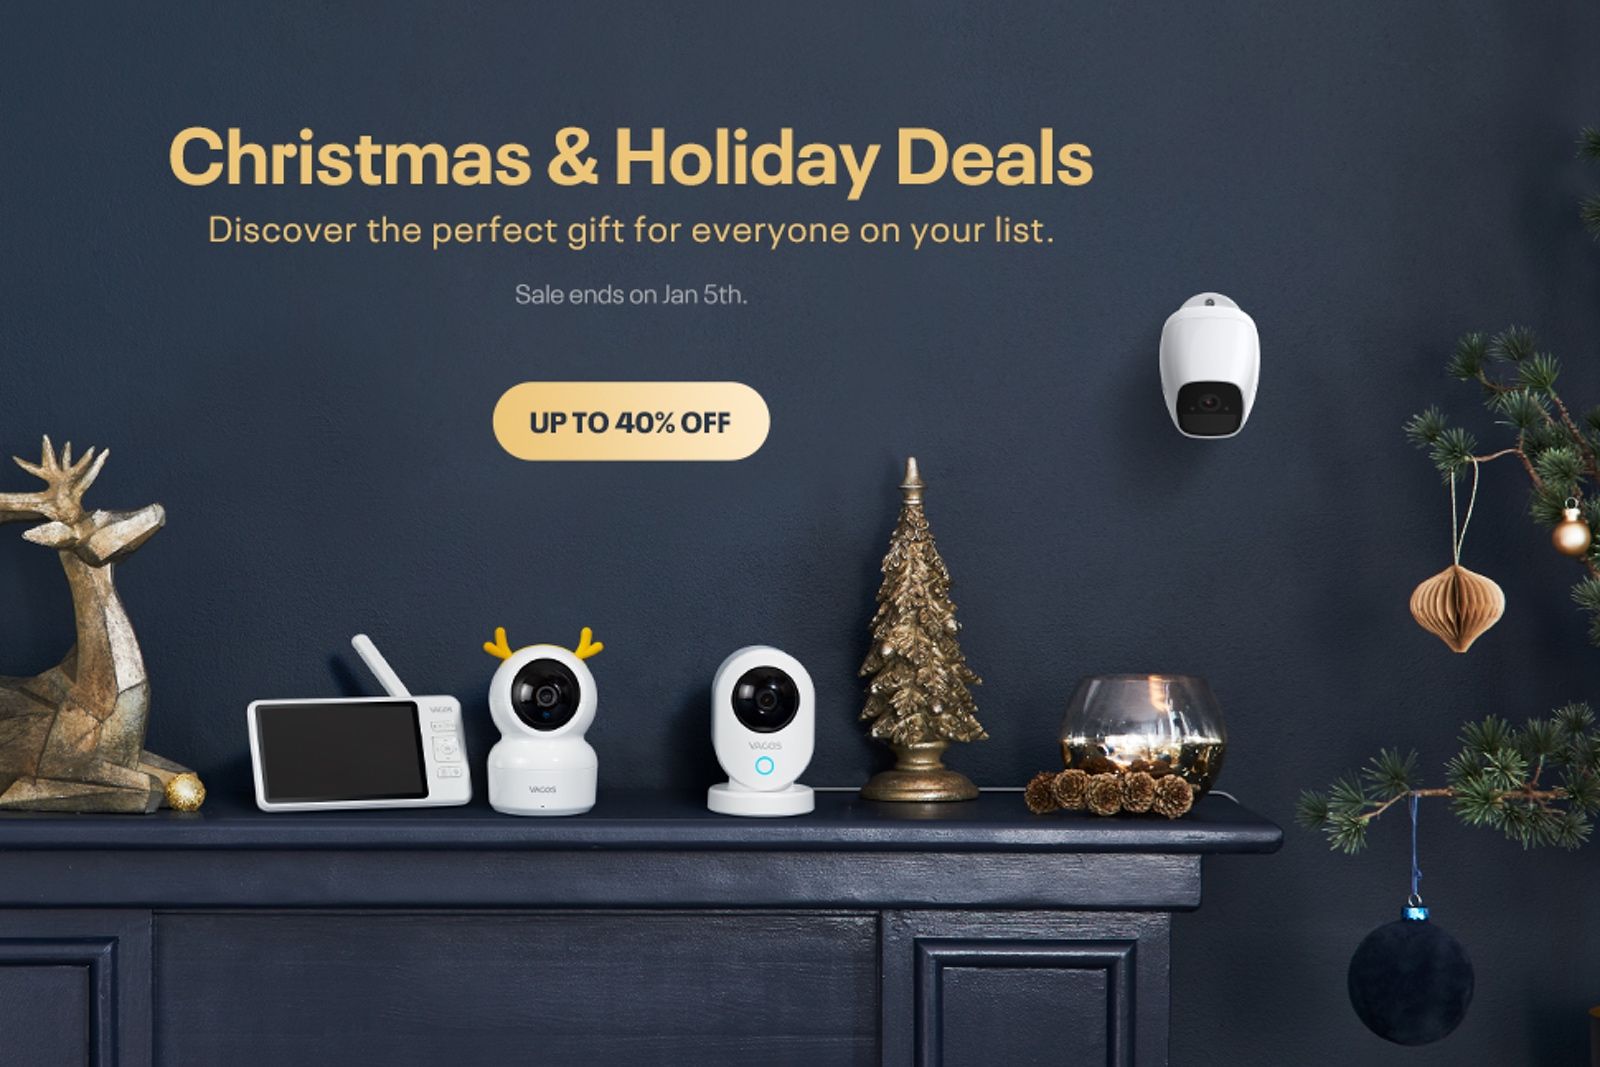 Vacos has some superb smart home camera deals for Christmas photo 1